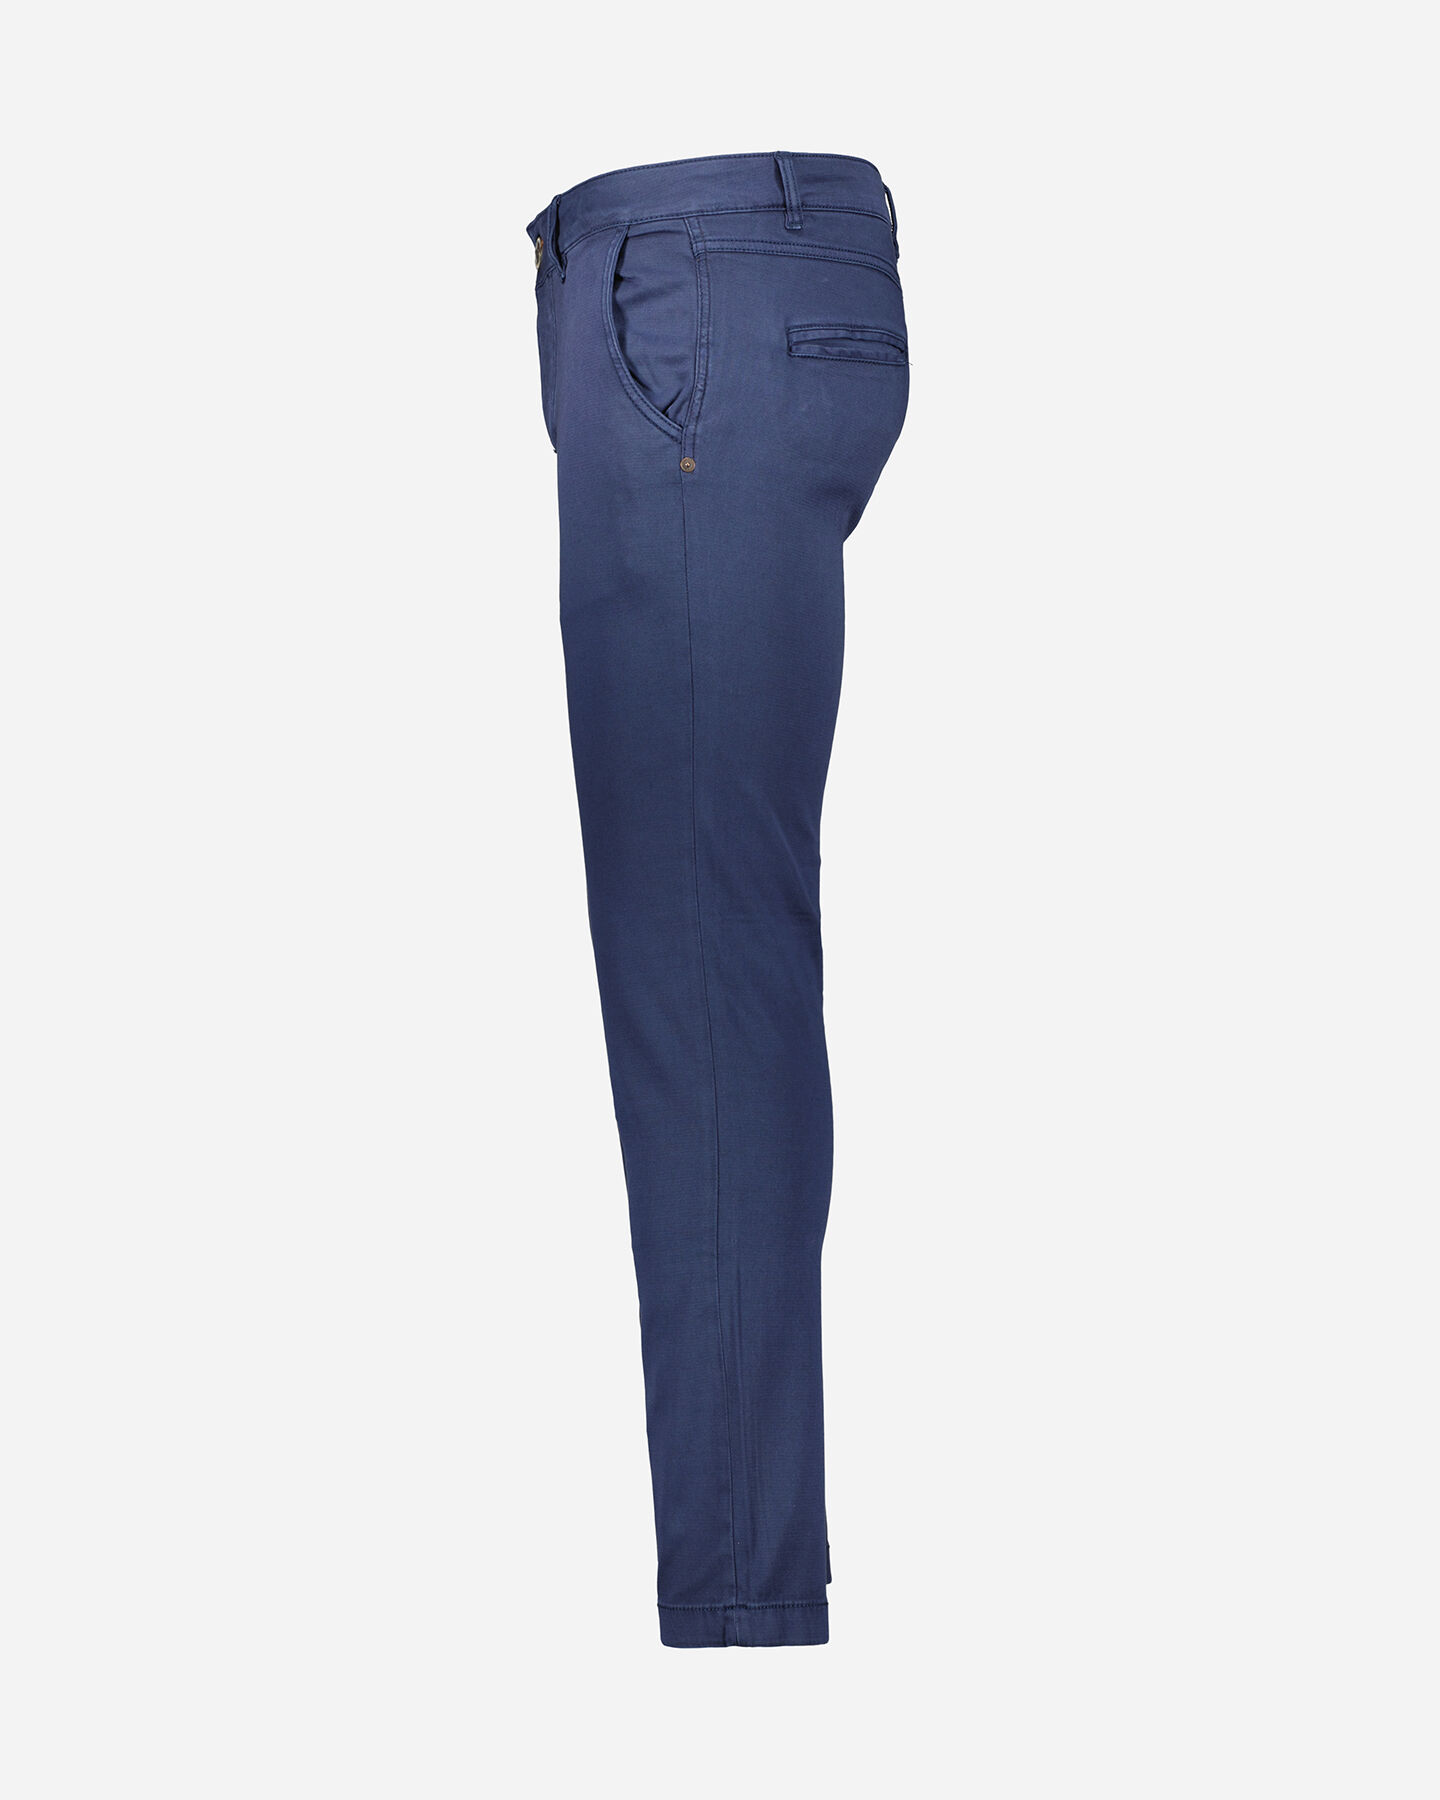  Pantalone COTTON BELT CHINO M S4115862|518|30 scatto 1